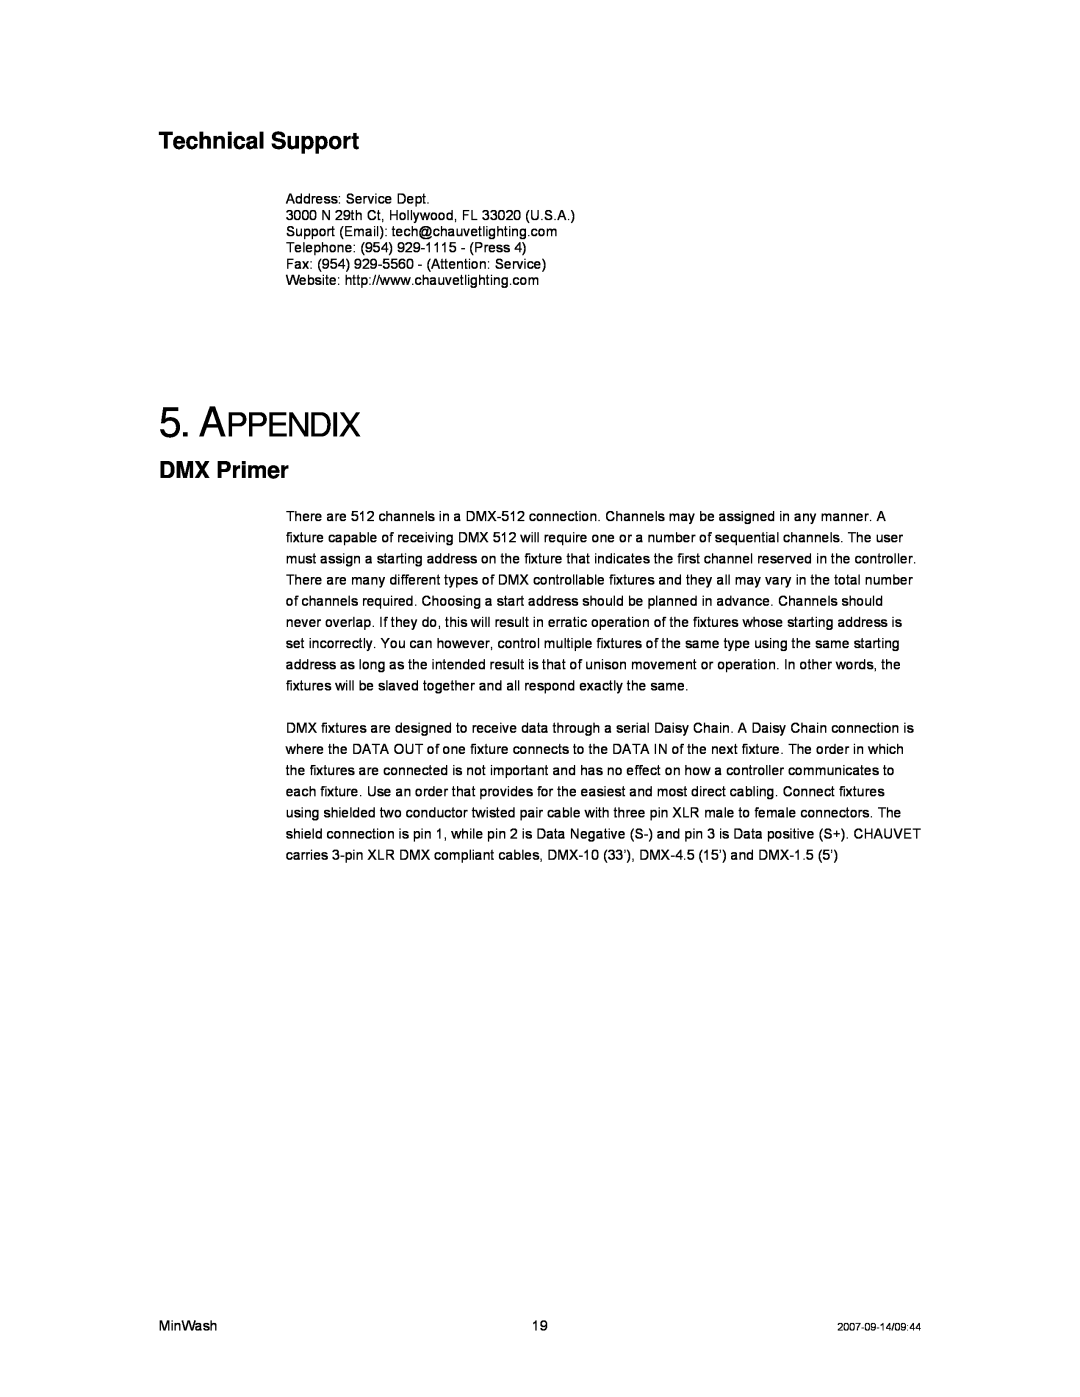 Chauvet DMX512 user service Appendix, Technical Support, DMX Primer 